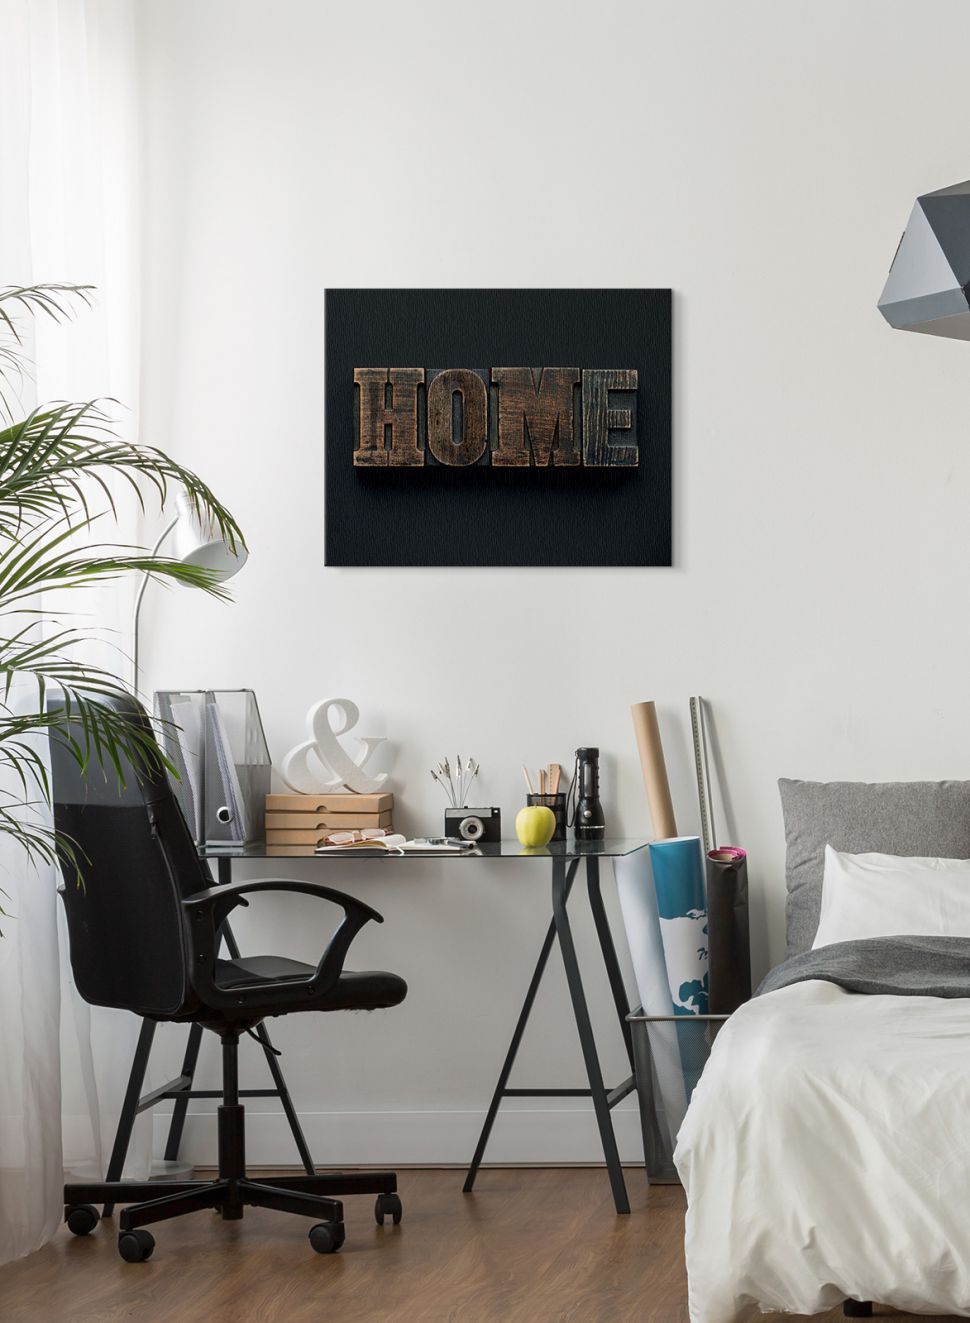 Typograficzny obraz na płótnie o nazwie Home wiszący w sypialni nad szklanym biurkiem